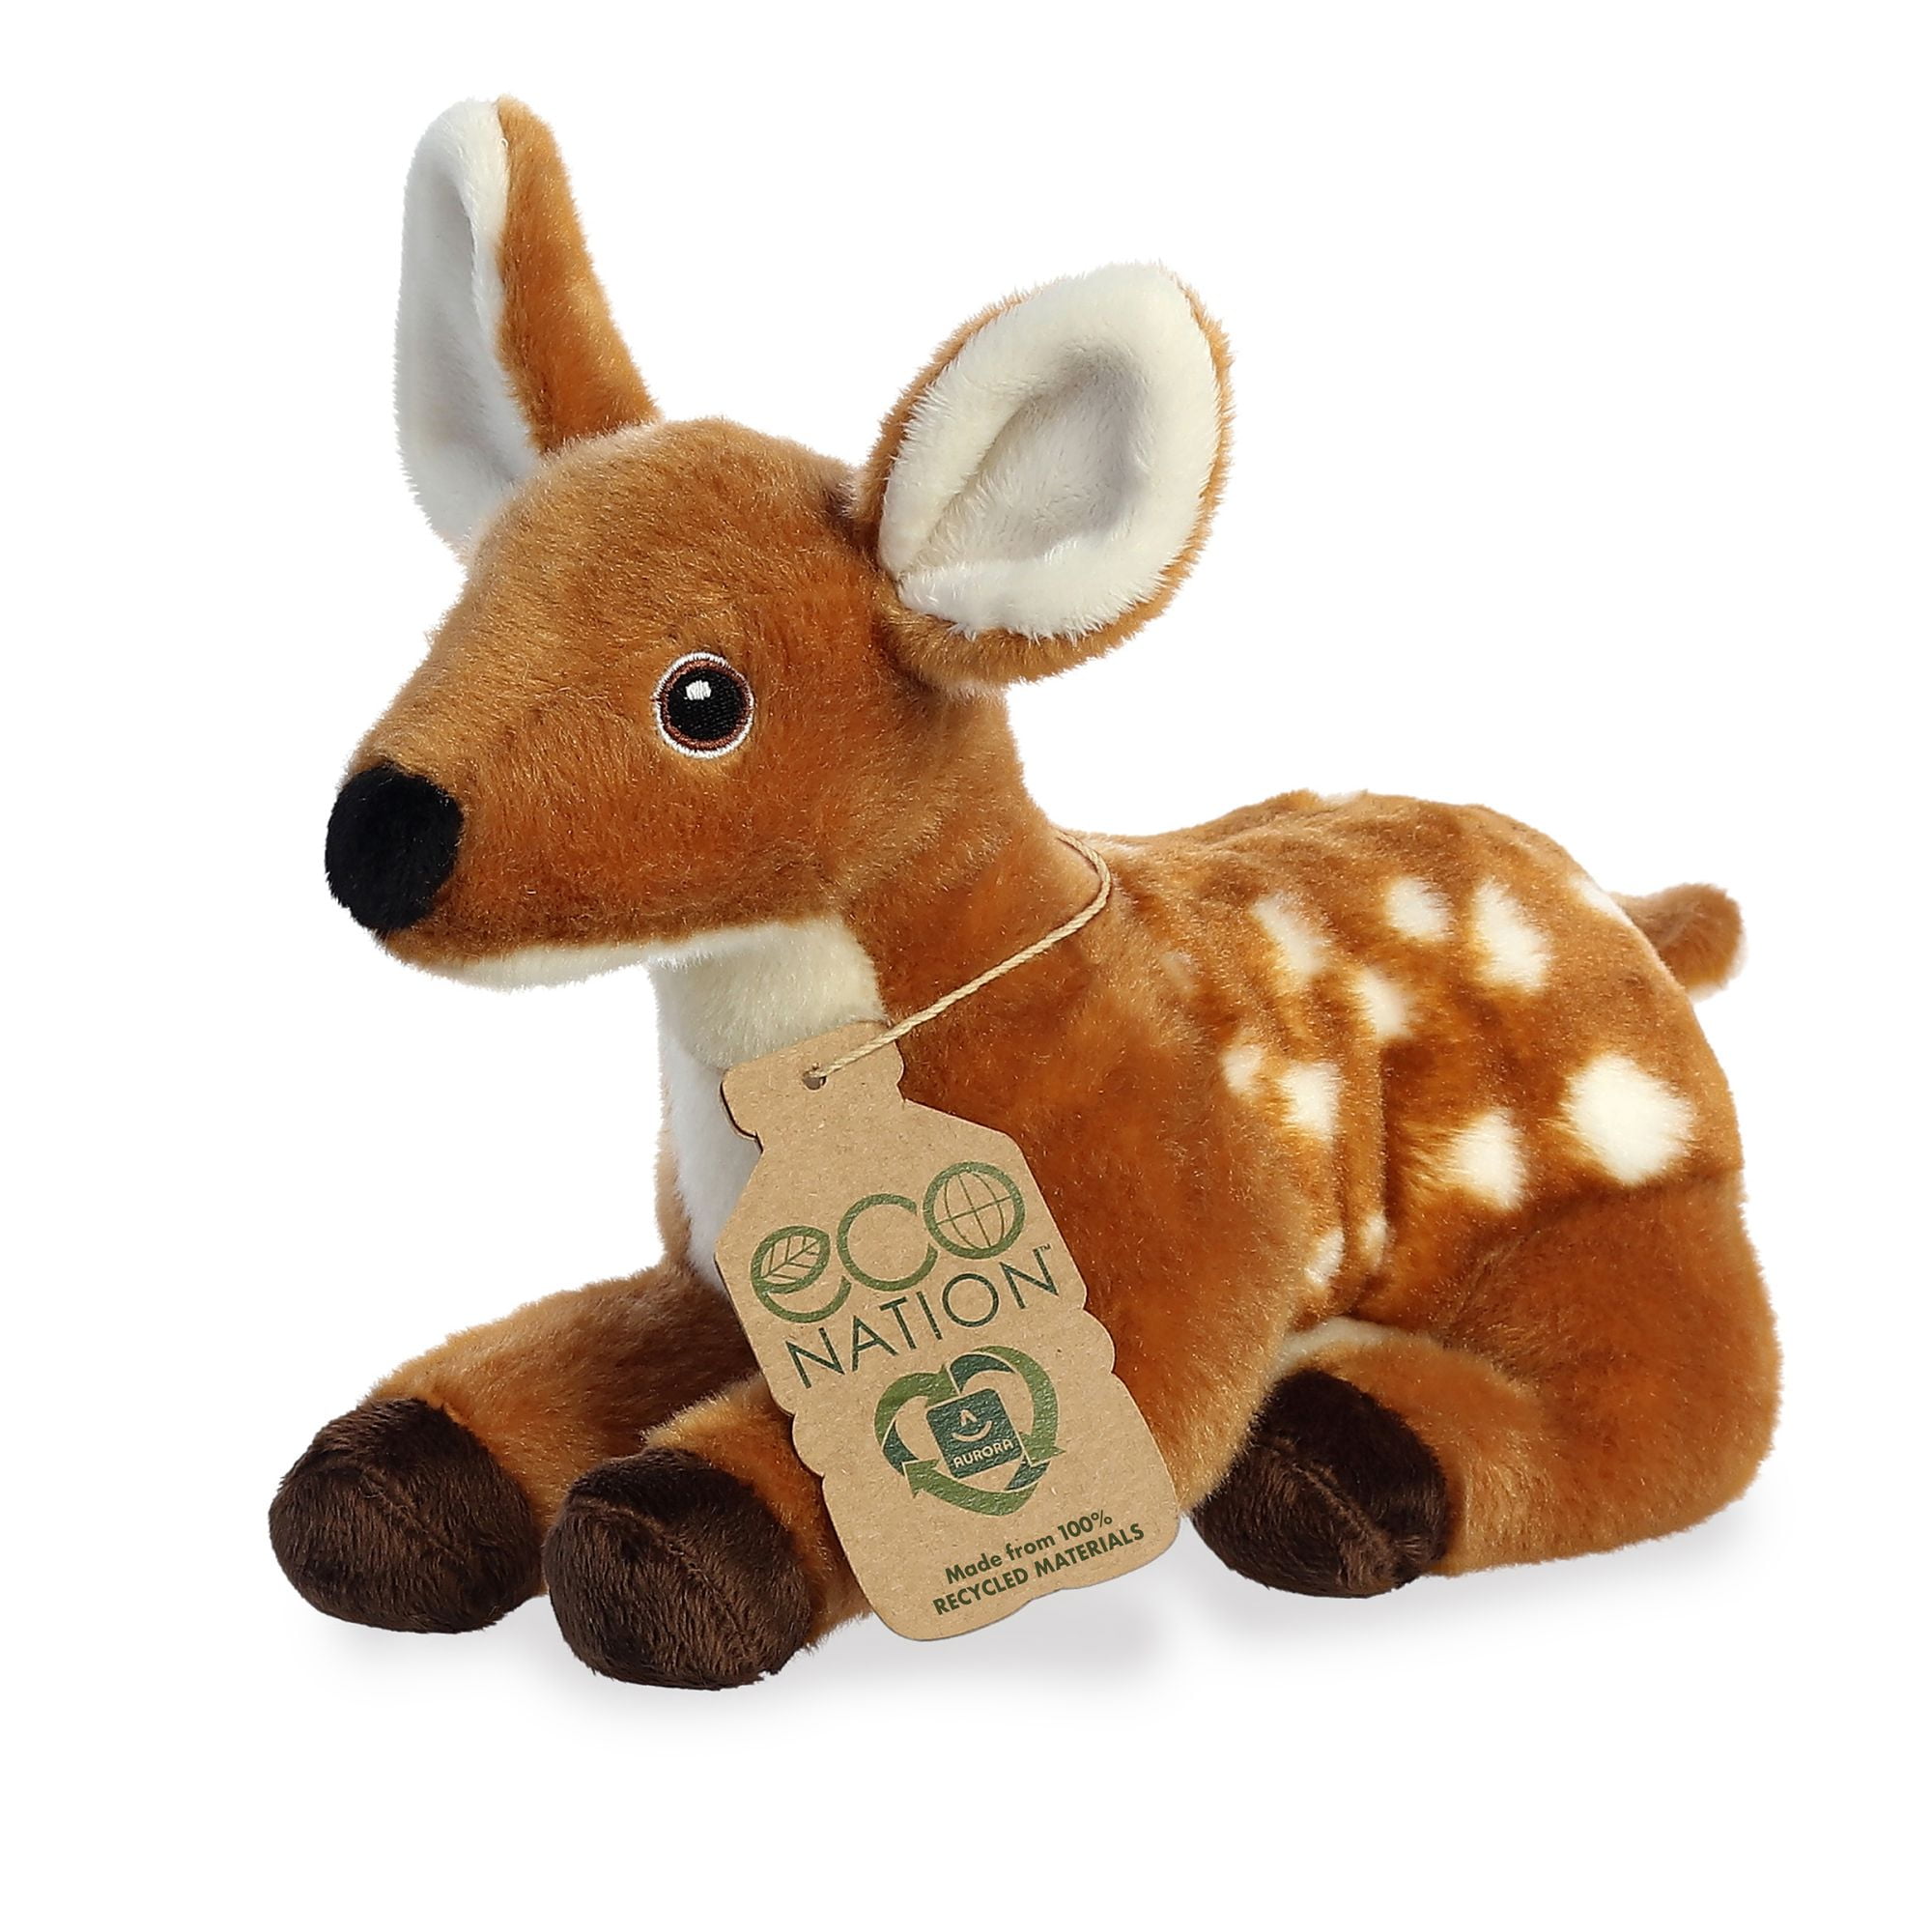 Fern Fawn Douglas Cuddle 15" stuffed animal plush cuddle toy baby deer 